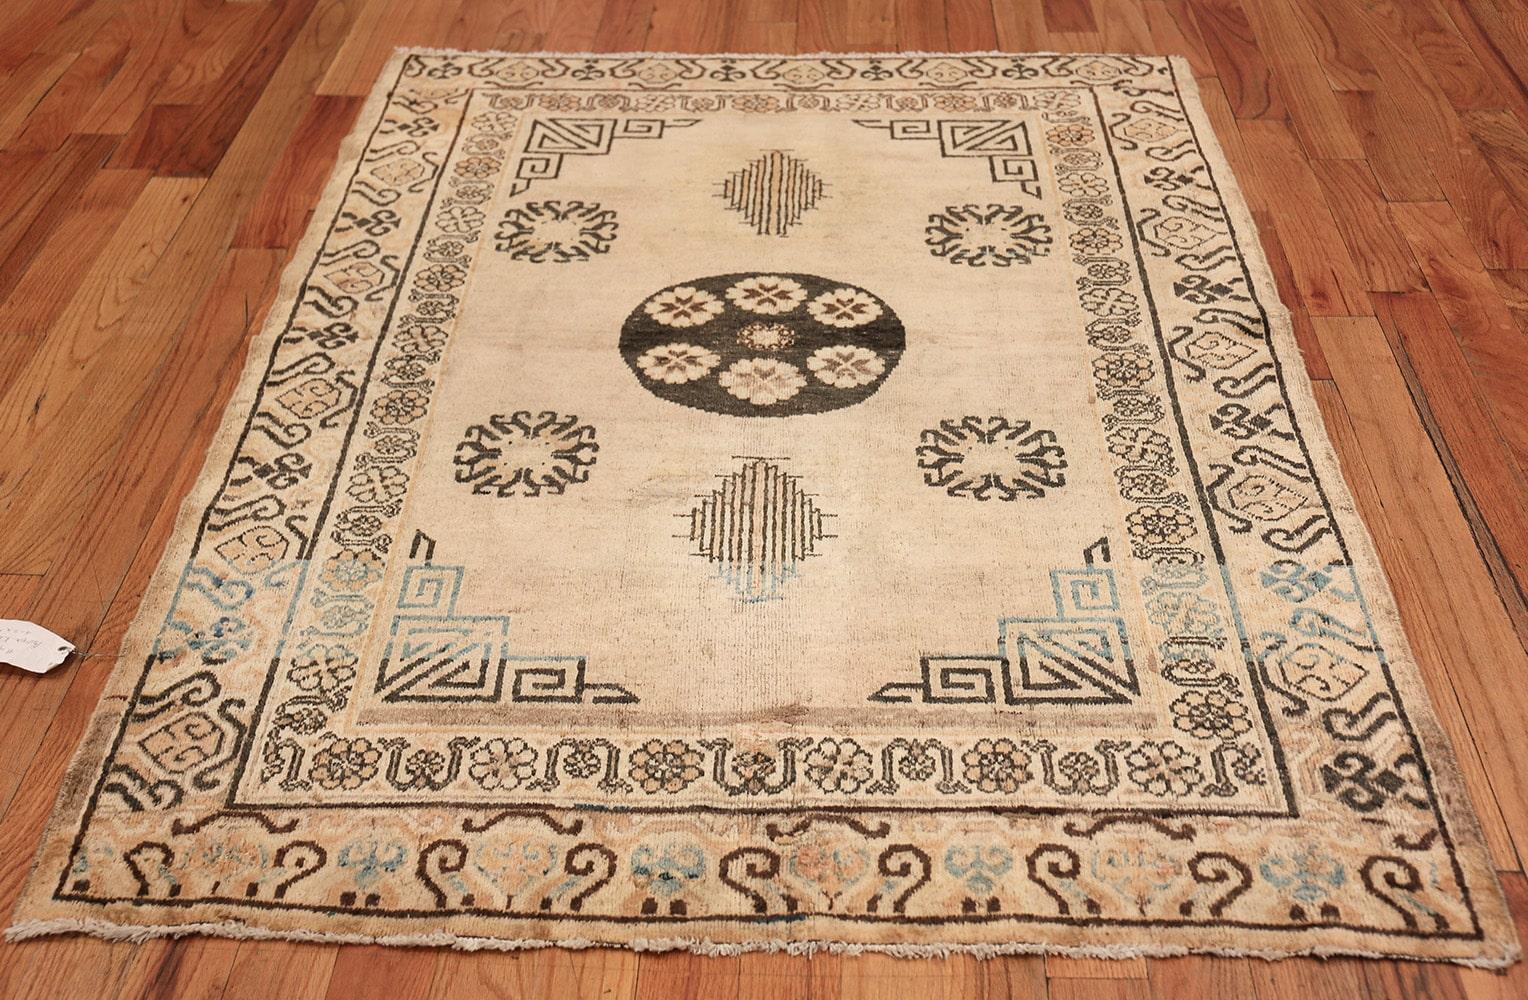 Antiker Khotan-Teppich aus Ostturkestan, Herkunft: Ostturkestan, um 1900. Größe: 4 ft 2 in x 5 ft 8 in (1,27 m x 1,73 m)

Dieser elegante, antike Khotan-Teppich, der eine elegante Verbindung von Ost und West darstellt, hat eine traditionelle